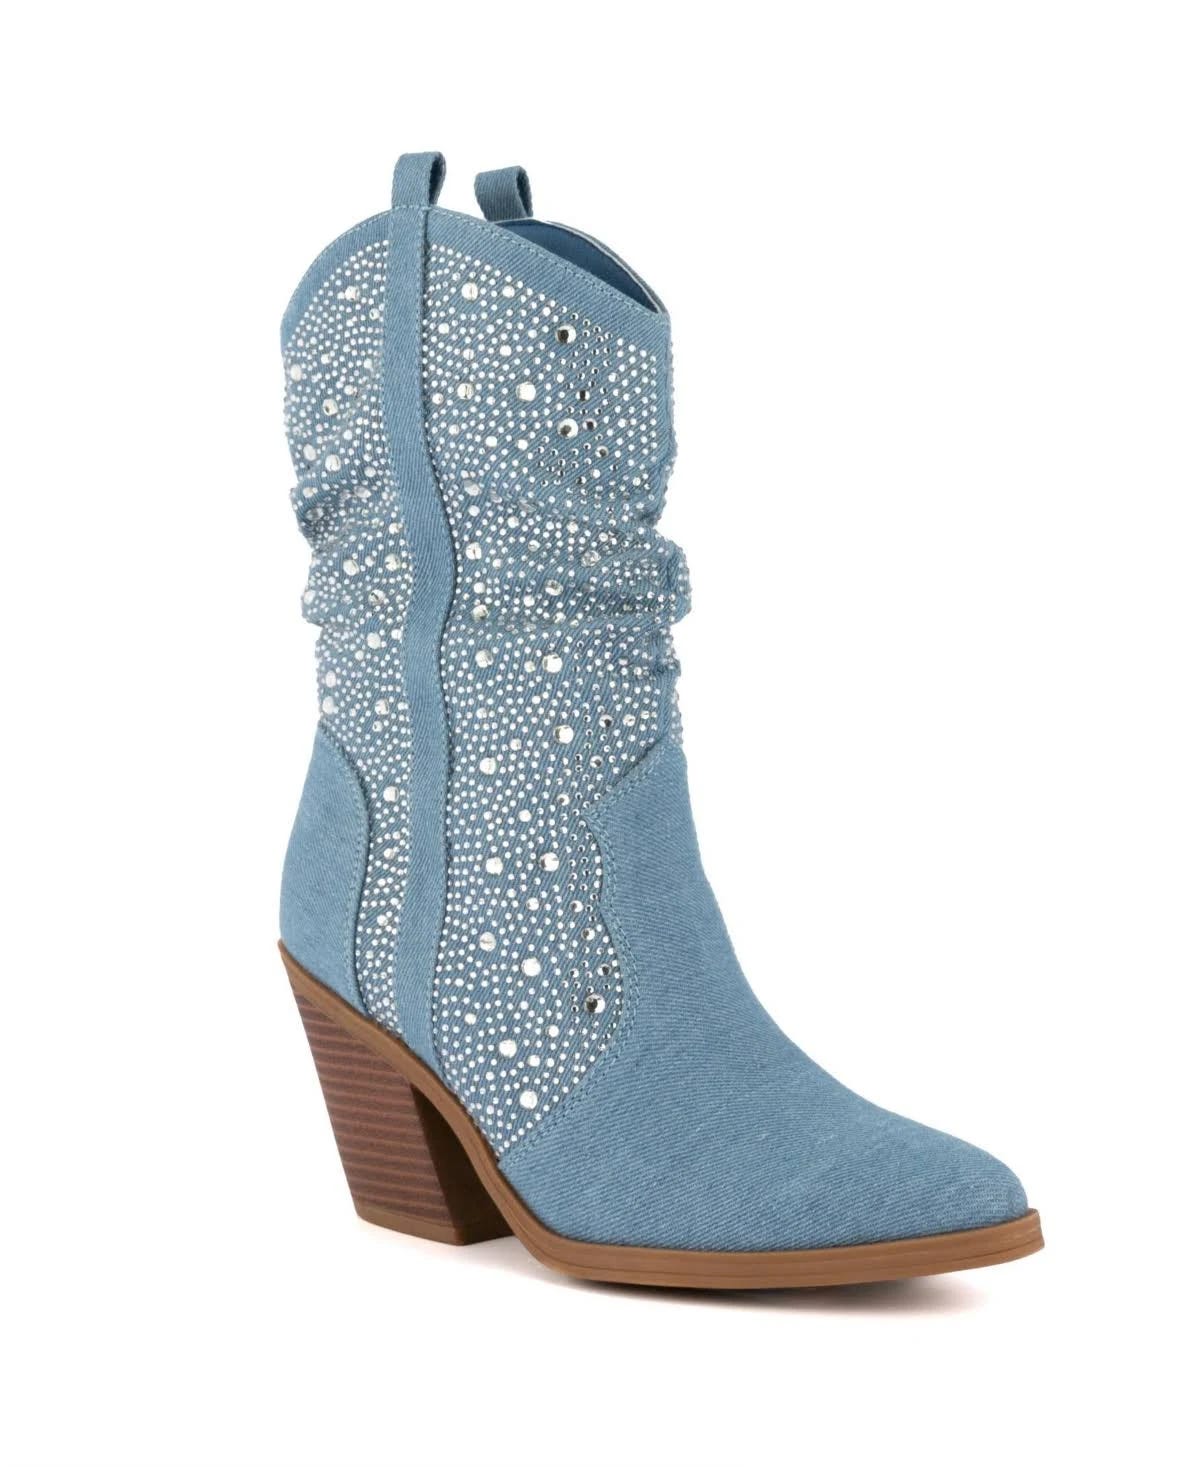 Stylish Kassandra Western Boots with Rhinestones | Image